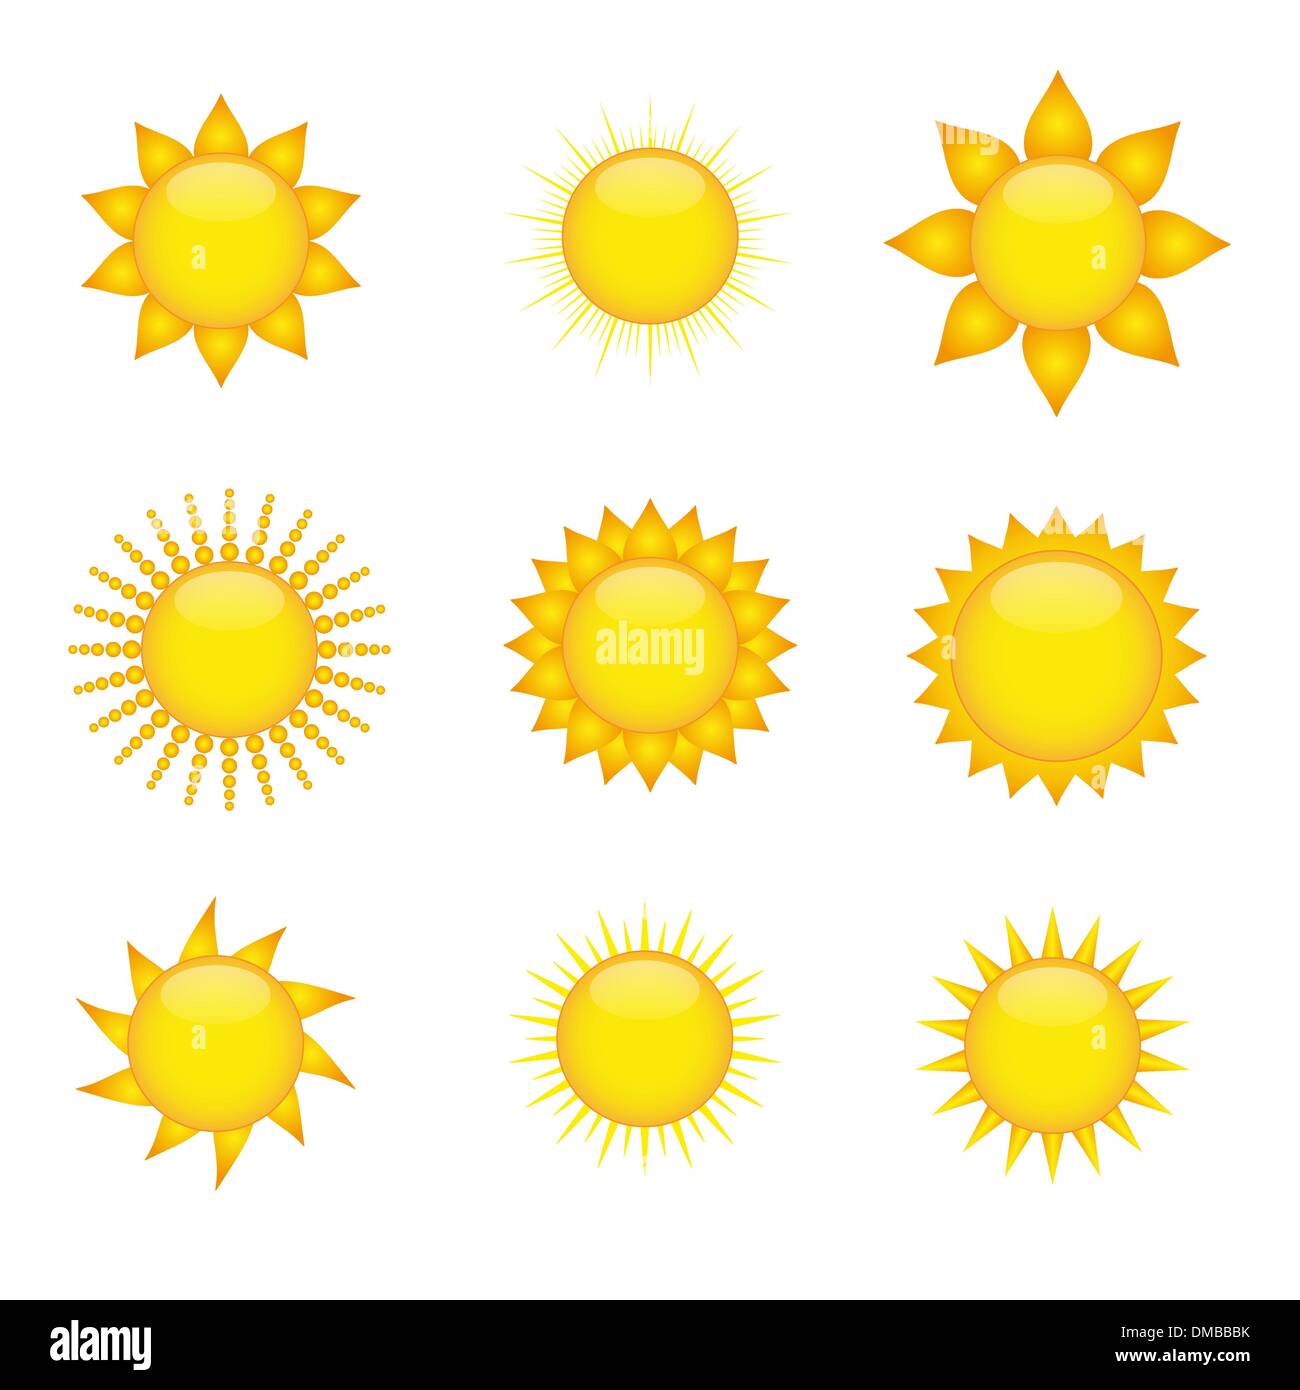 Sun icons Stock Vector